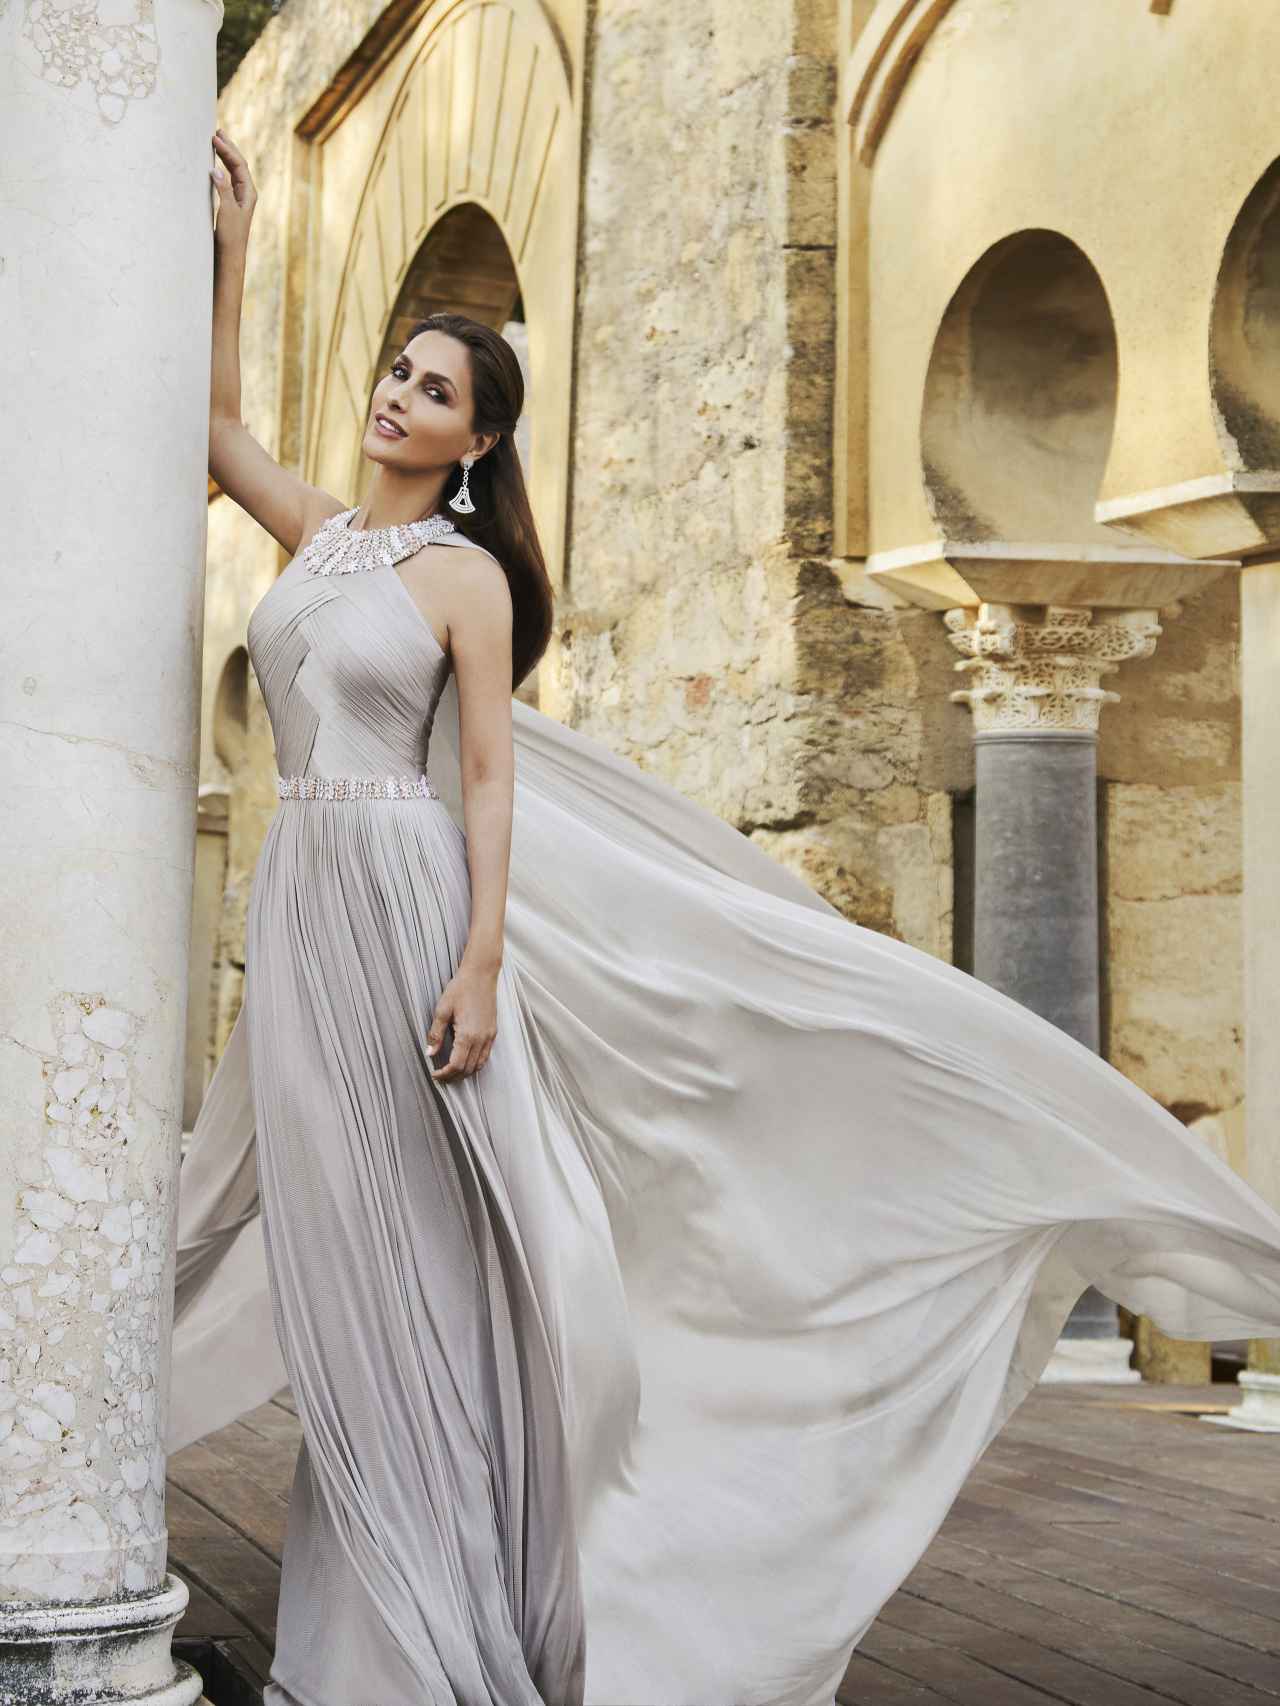 Paloma Cuevas posa con uno de sus deslumbrante vestidos en Córdoba, su tierra natal.